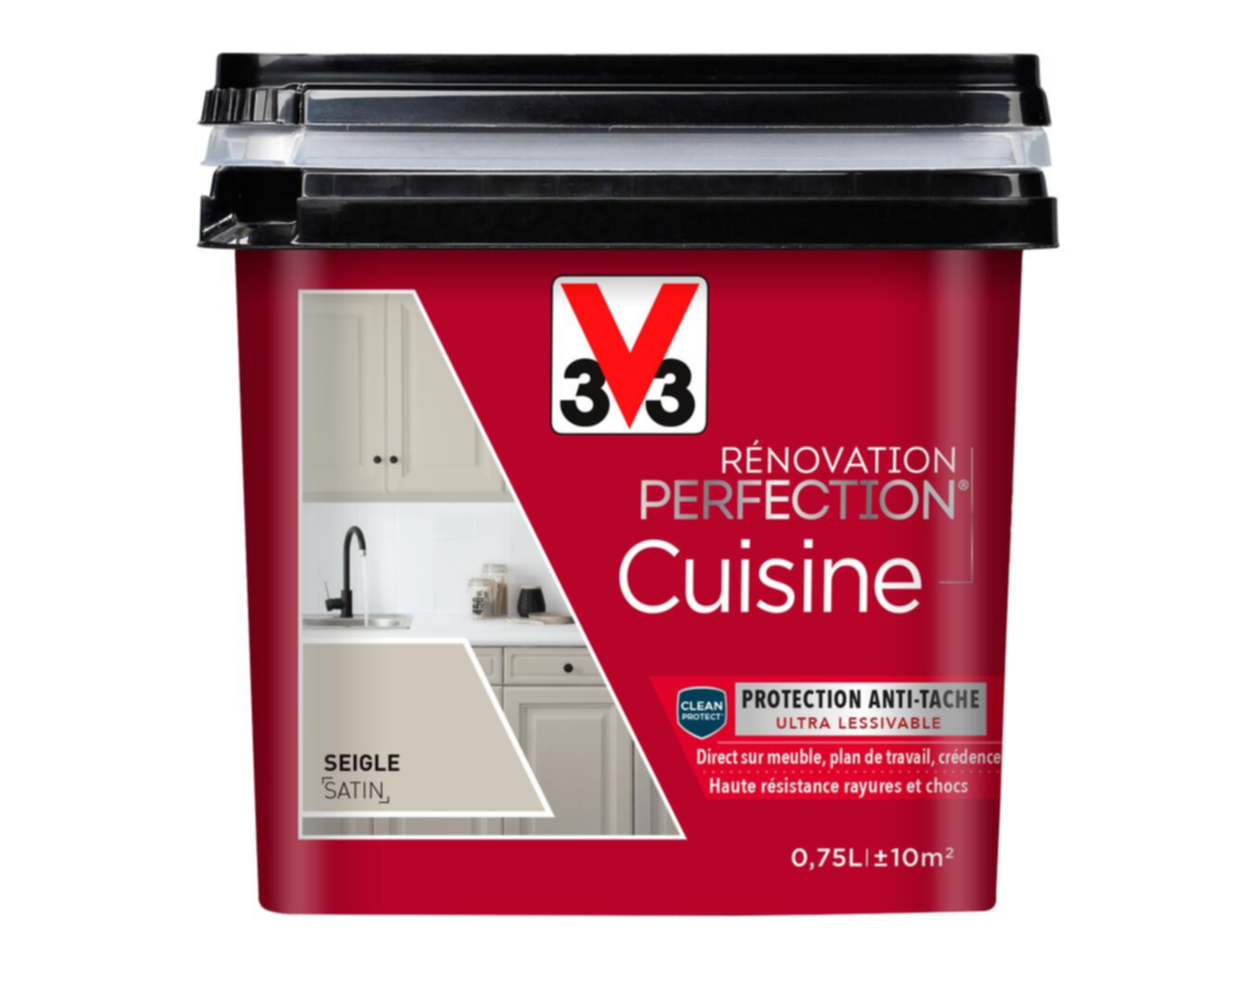 Peinture rénovation cuisine Perfection seigle satin 0,75l - V33